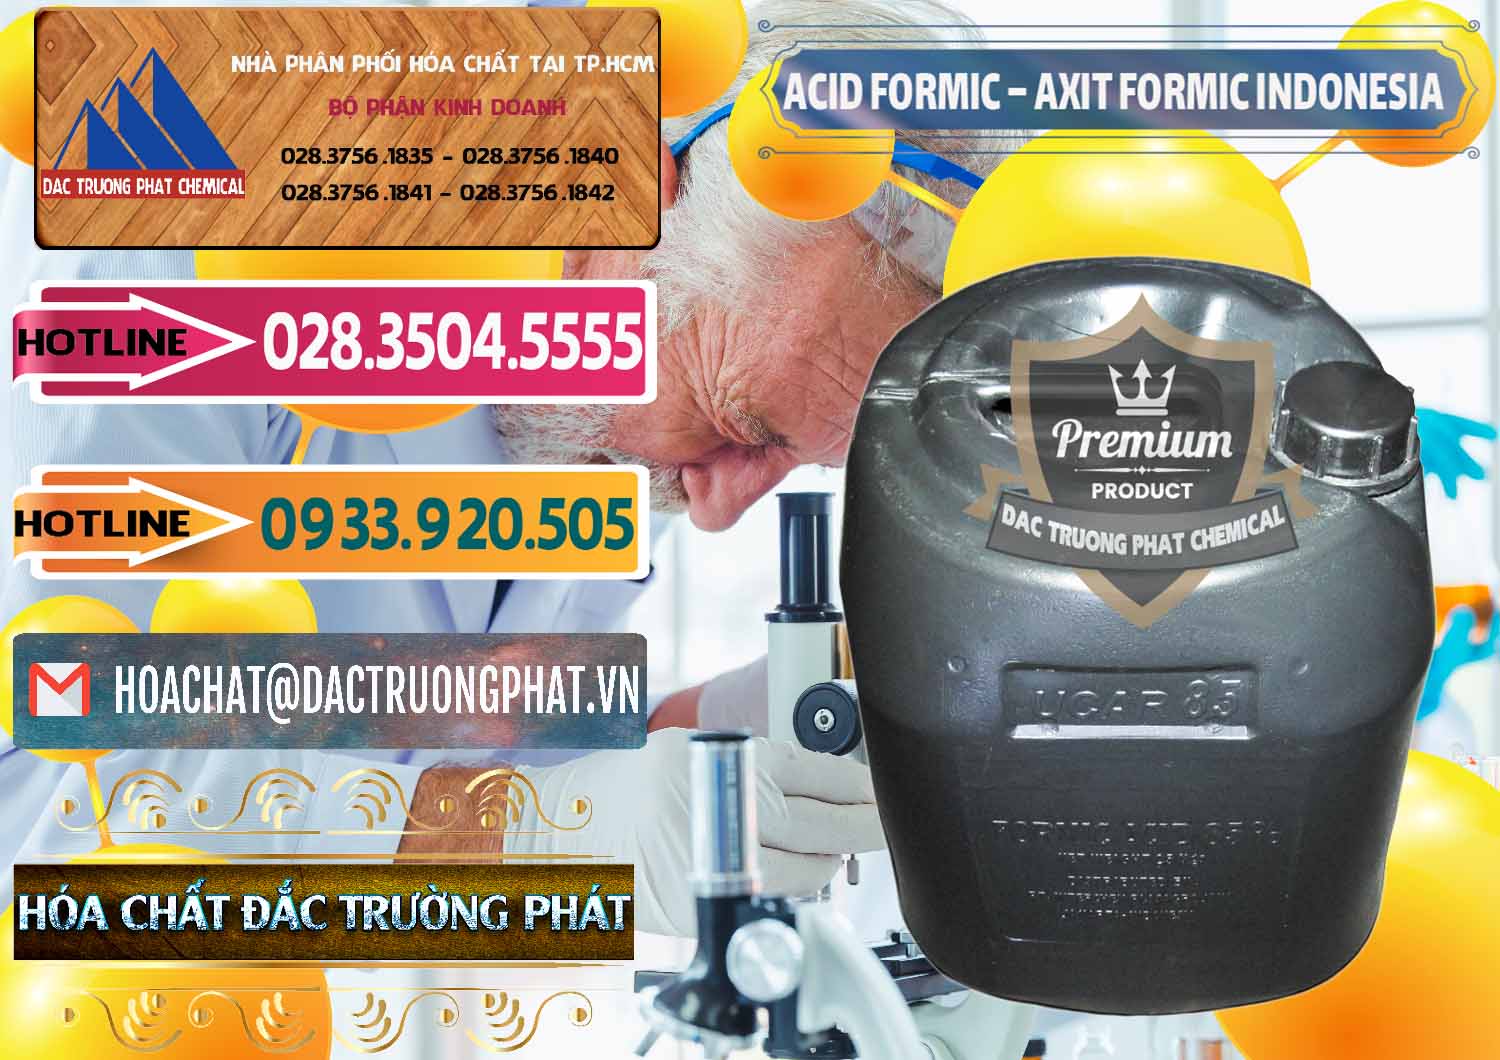 Cung cấp & bán Acid Formic - Axit Formic Indonesia - 0026 - Cung cấp và kinh doanh hóa chất tại TP.HCM - dactruongphat.vn